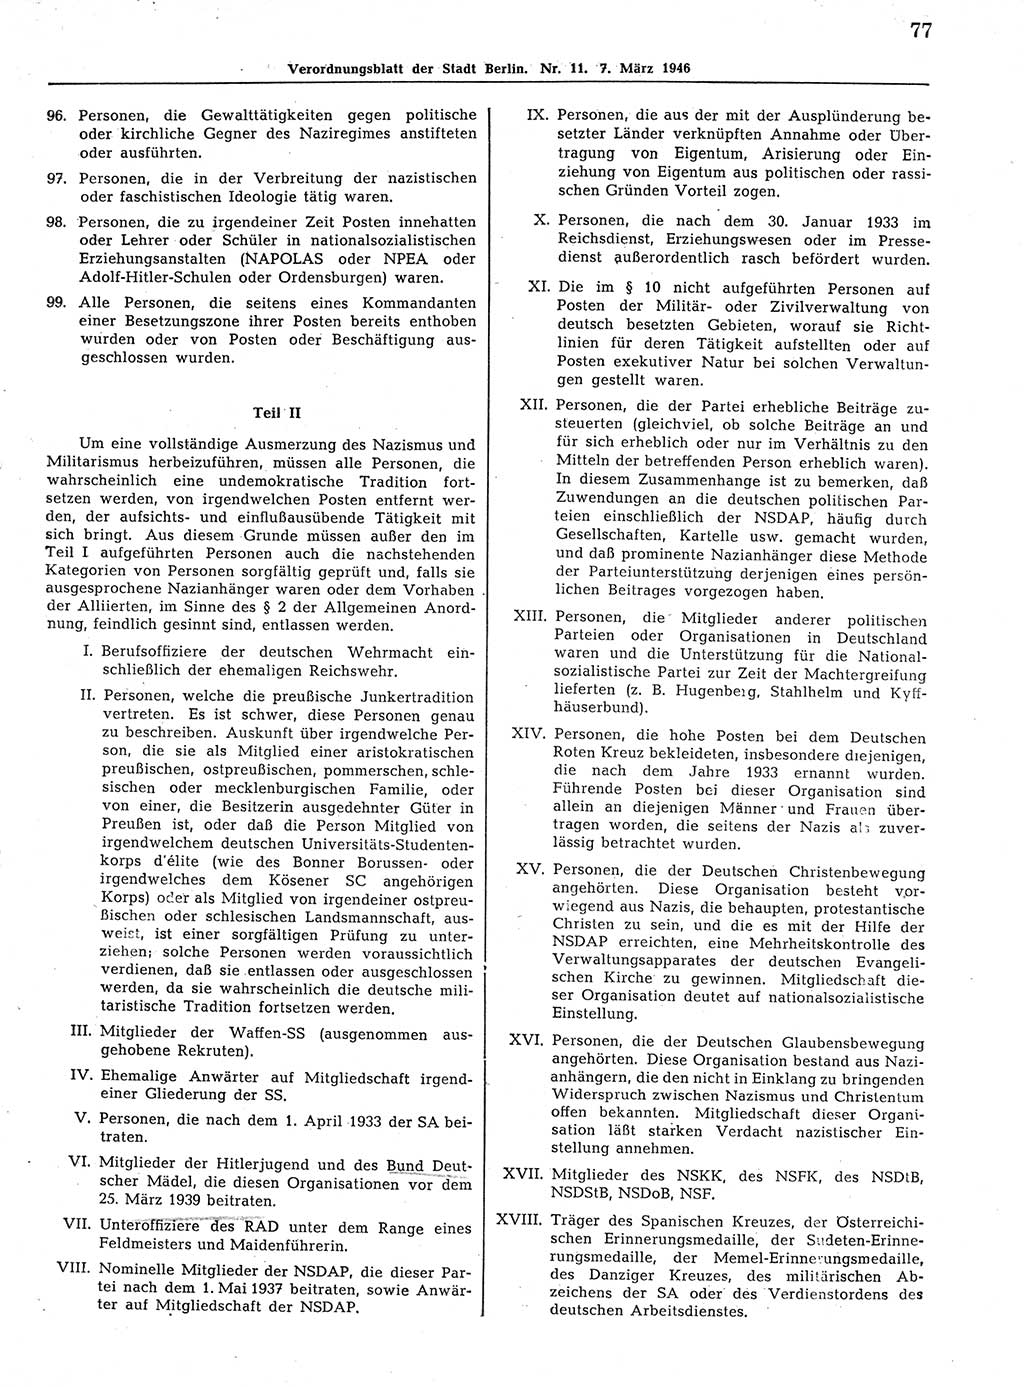 Verordnungsblatt (VOBl.) der Stadt Berlin, für Groß-Berlin 1946, Seite 77 (VOBl. Bln. 1946, S. 77)